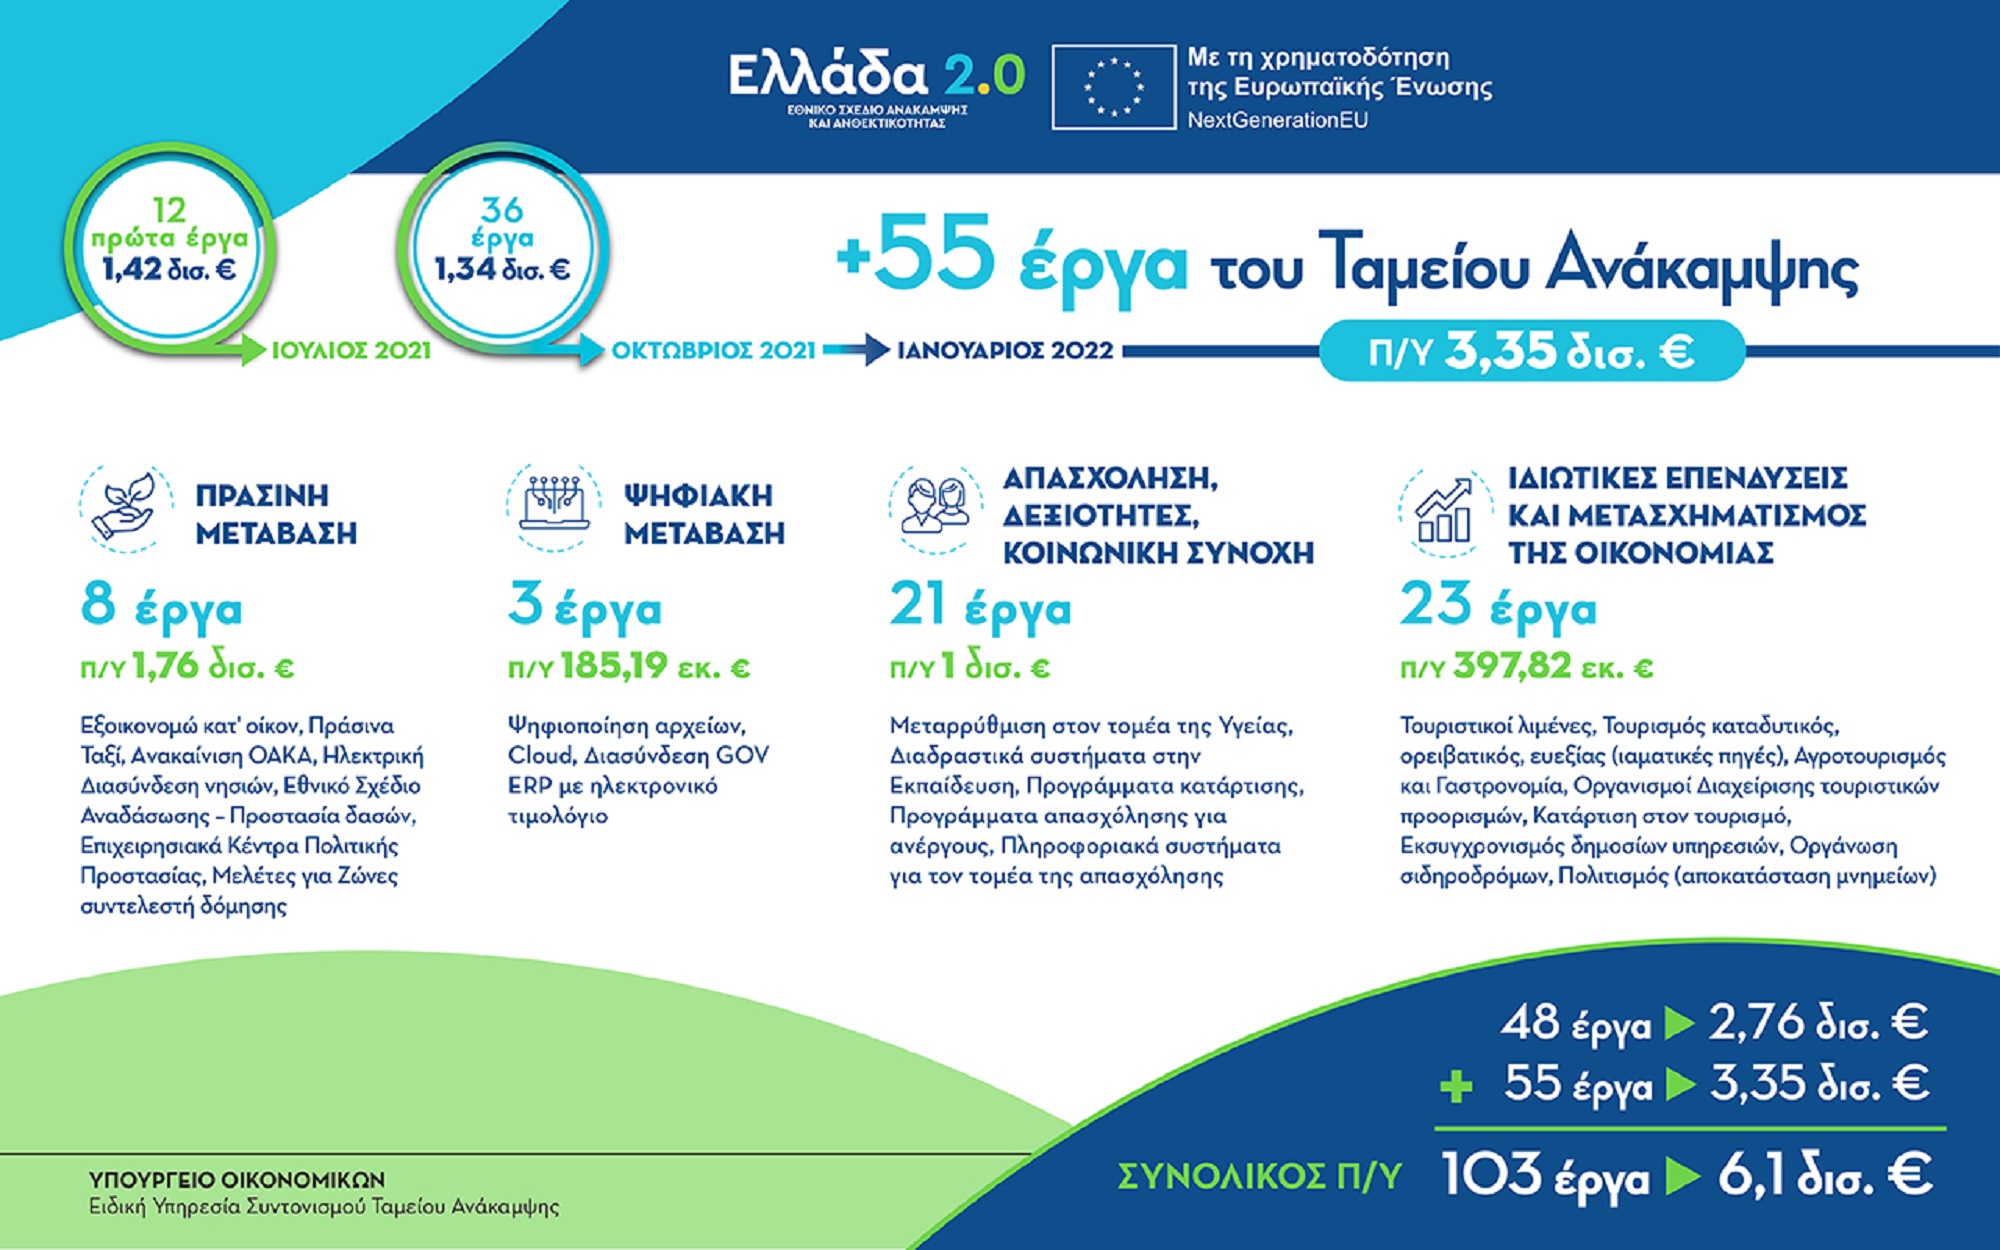 ΟΕΕ – Υπουργείο Οικονομικών Ενημερωτική εκστρατεία οικονομολόγων και επιχειρήσεων για τις ευκαιρίες του  «Ελλάδα 2.0»